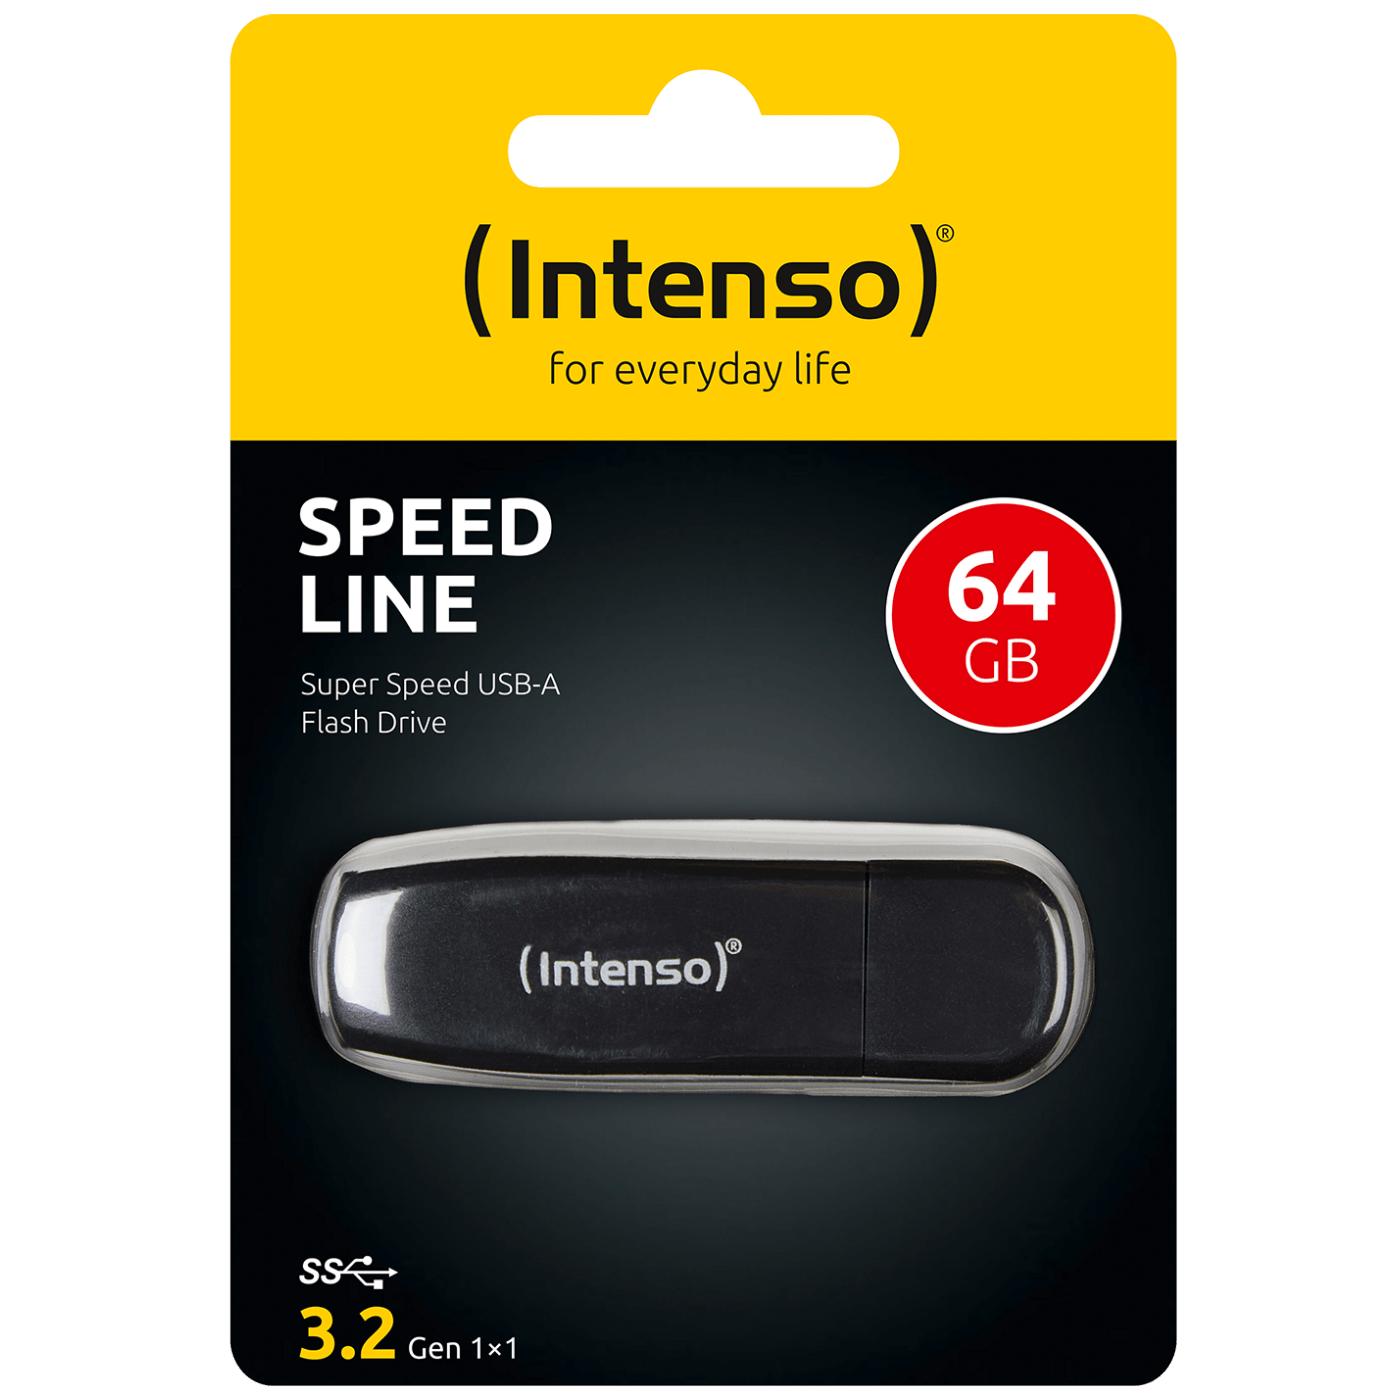 USB stick Black USB 3.0 Intenso Speed Line